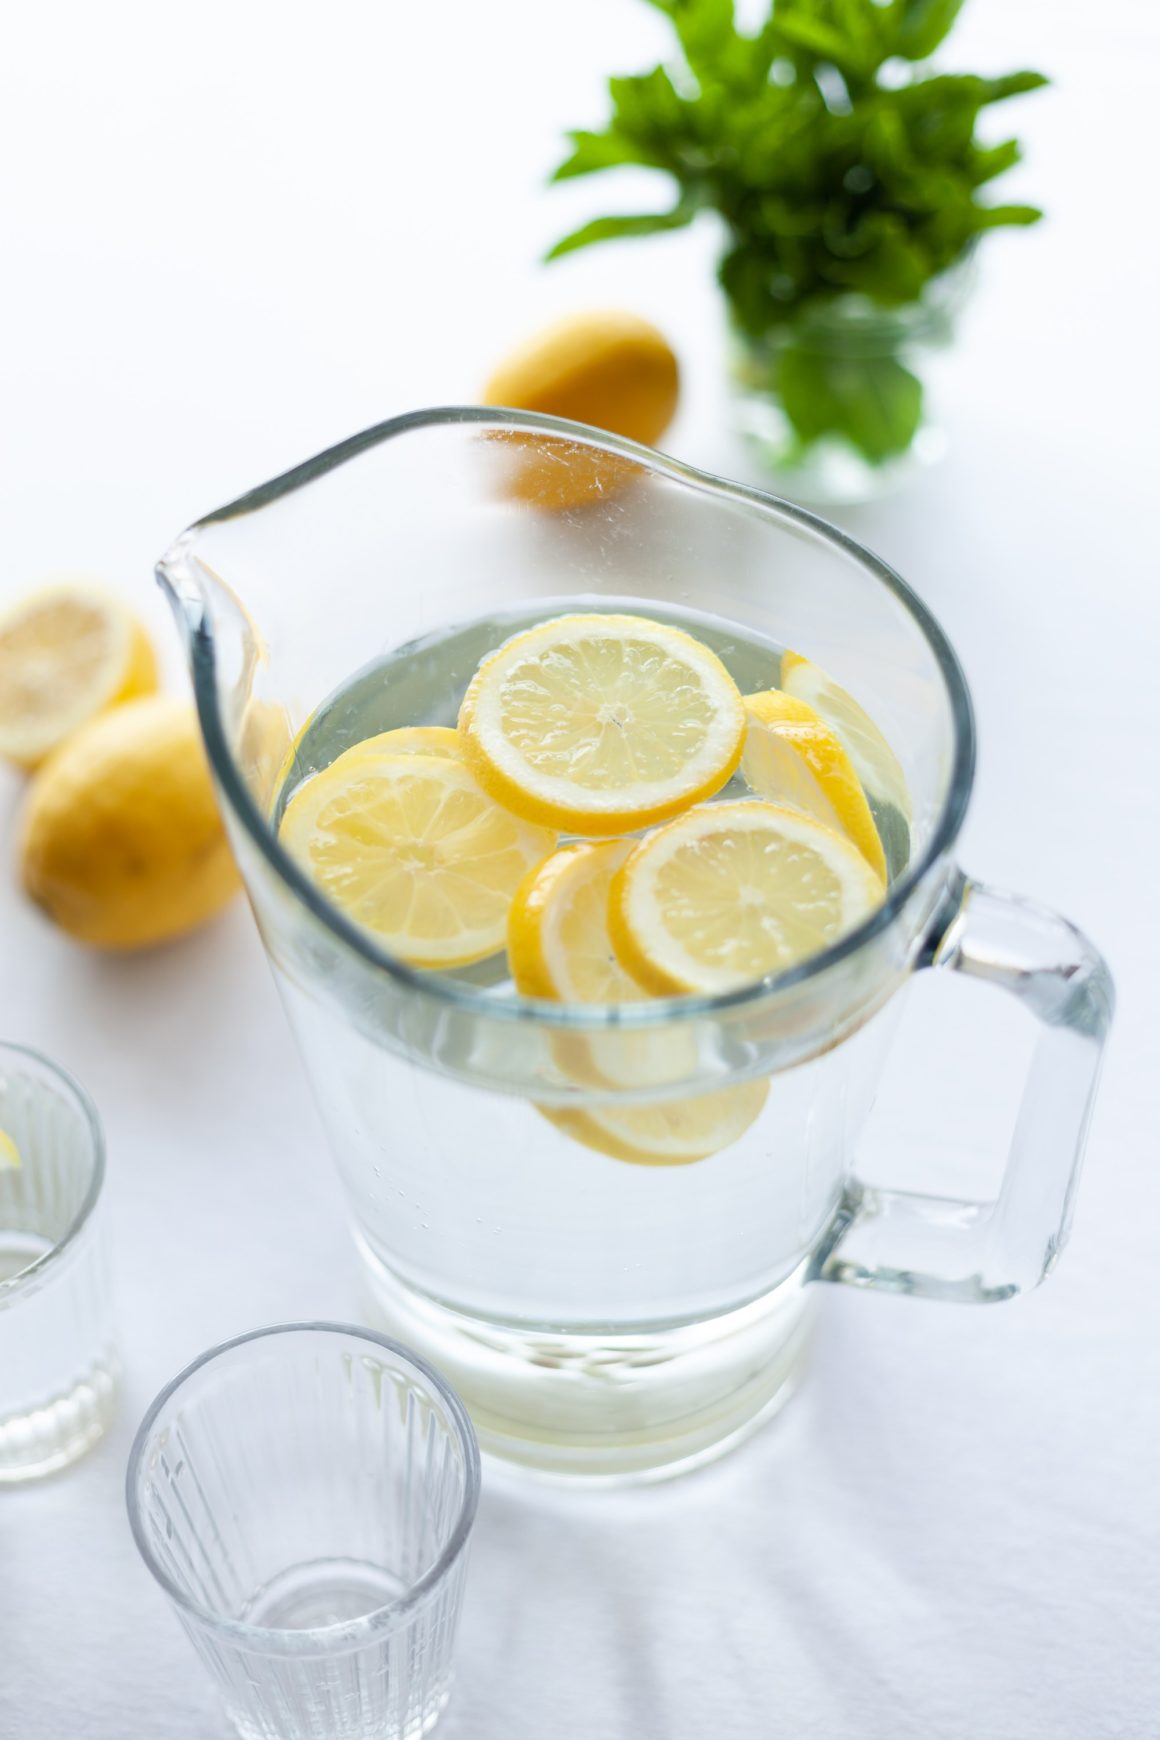 Benefici dell’acqua e limone…cosa dice la scienza?